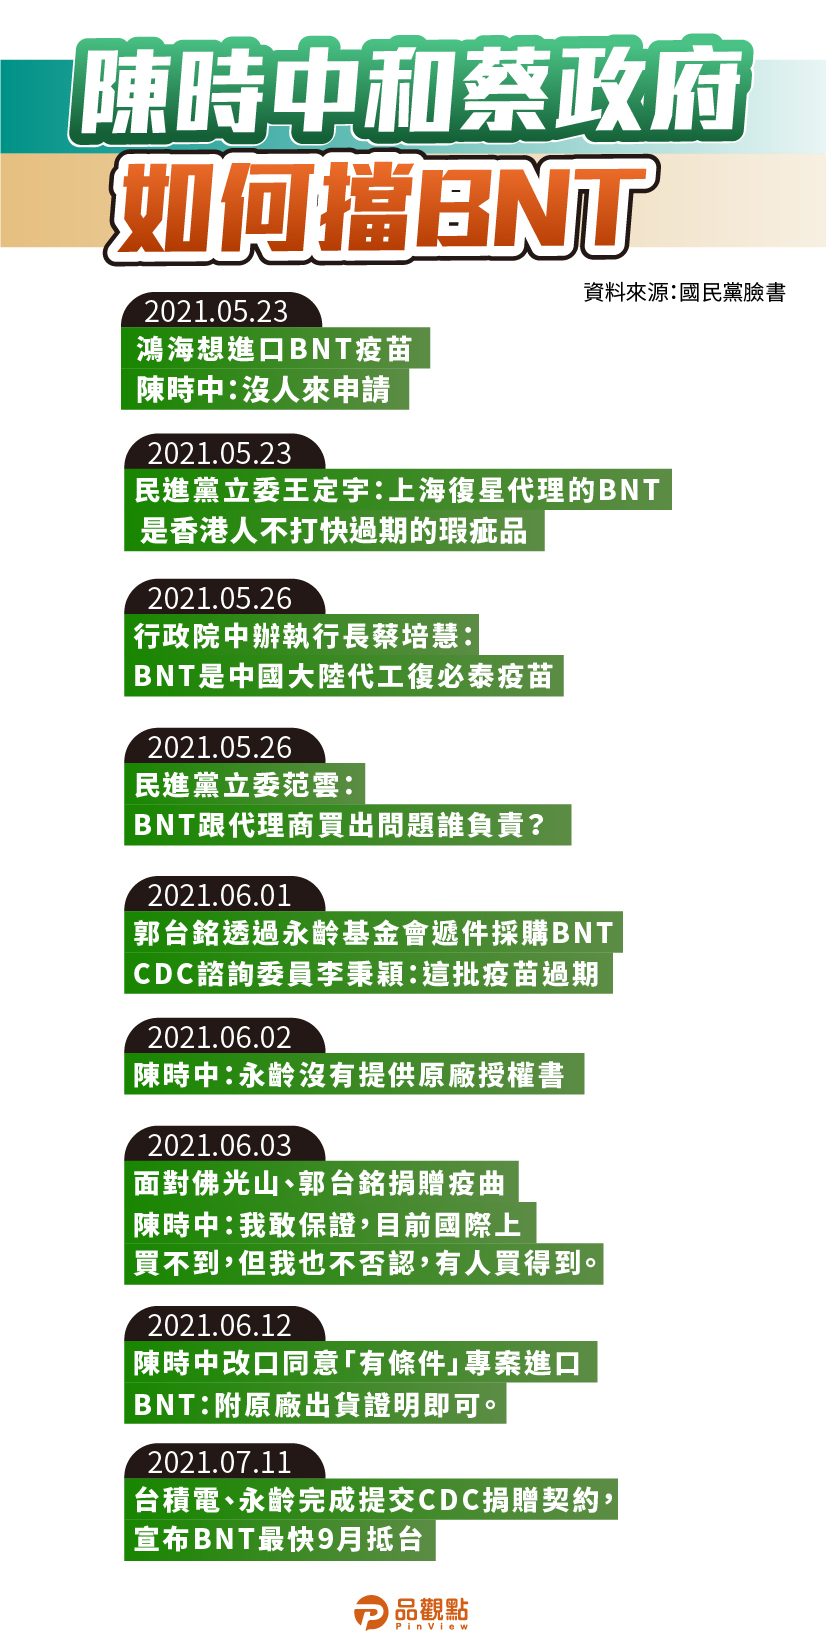 陳時中又扯BNT在中國分裝 去年指揮中心已否認 | 政治 - 台北郵報 | The Taipei Post